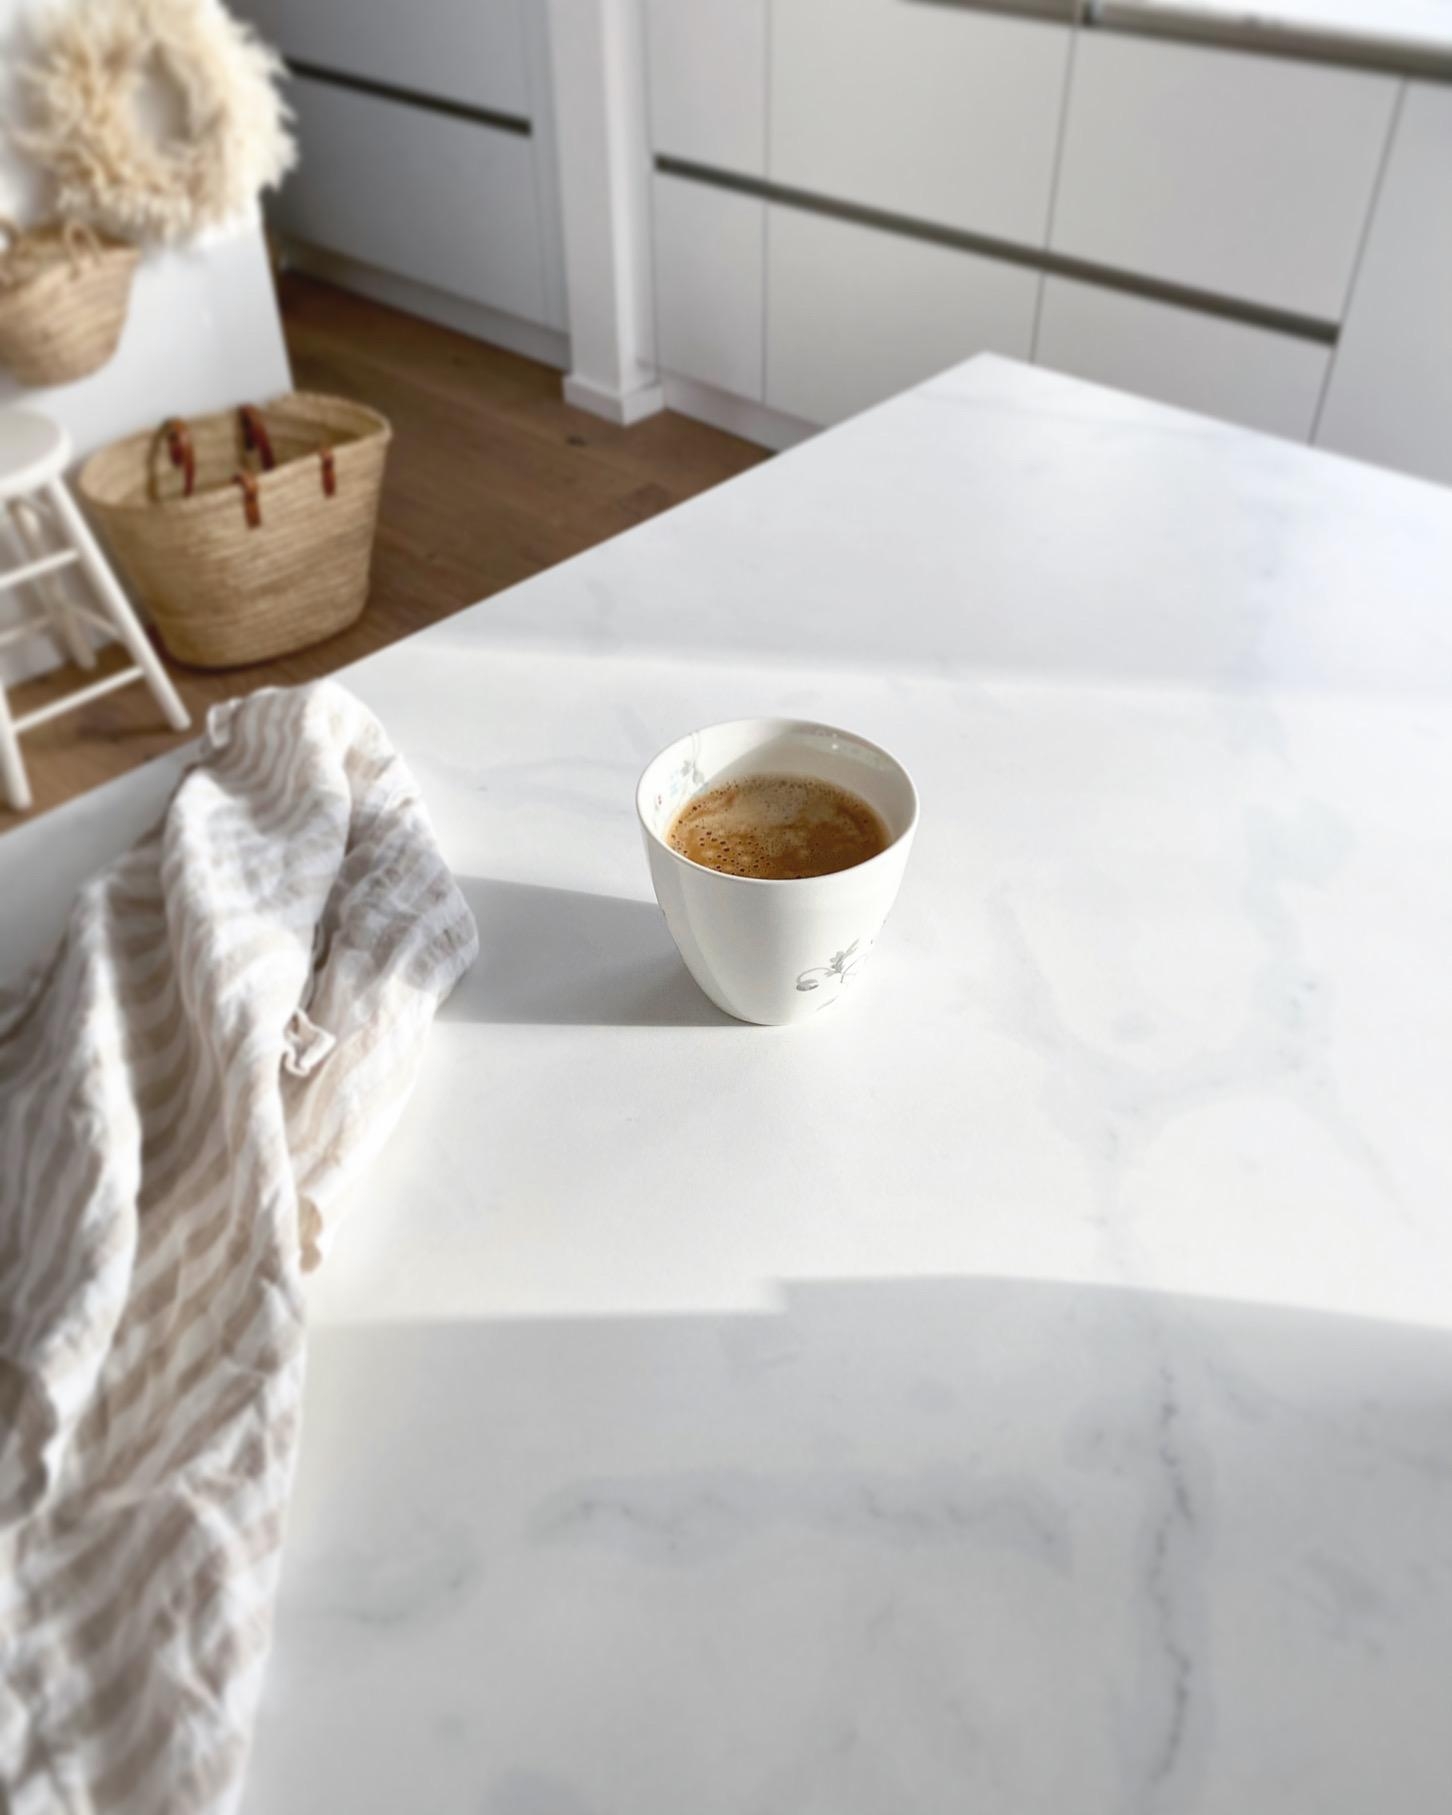 Sonnenstrahlen eingefangen 💫
#weisseküche#keramikplatte#whitekitchen#interior#couchliebt#hygge